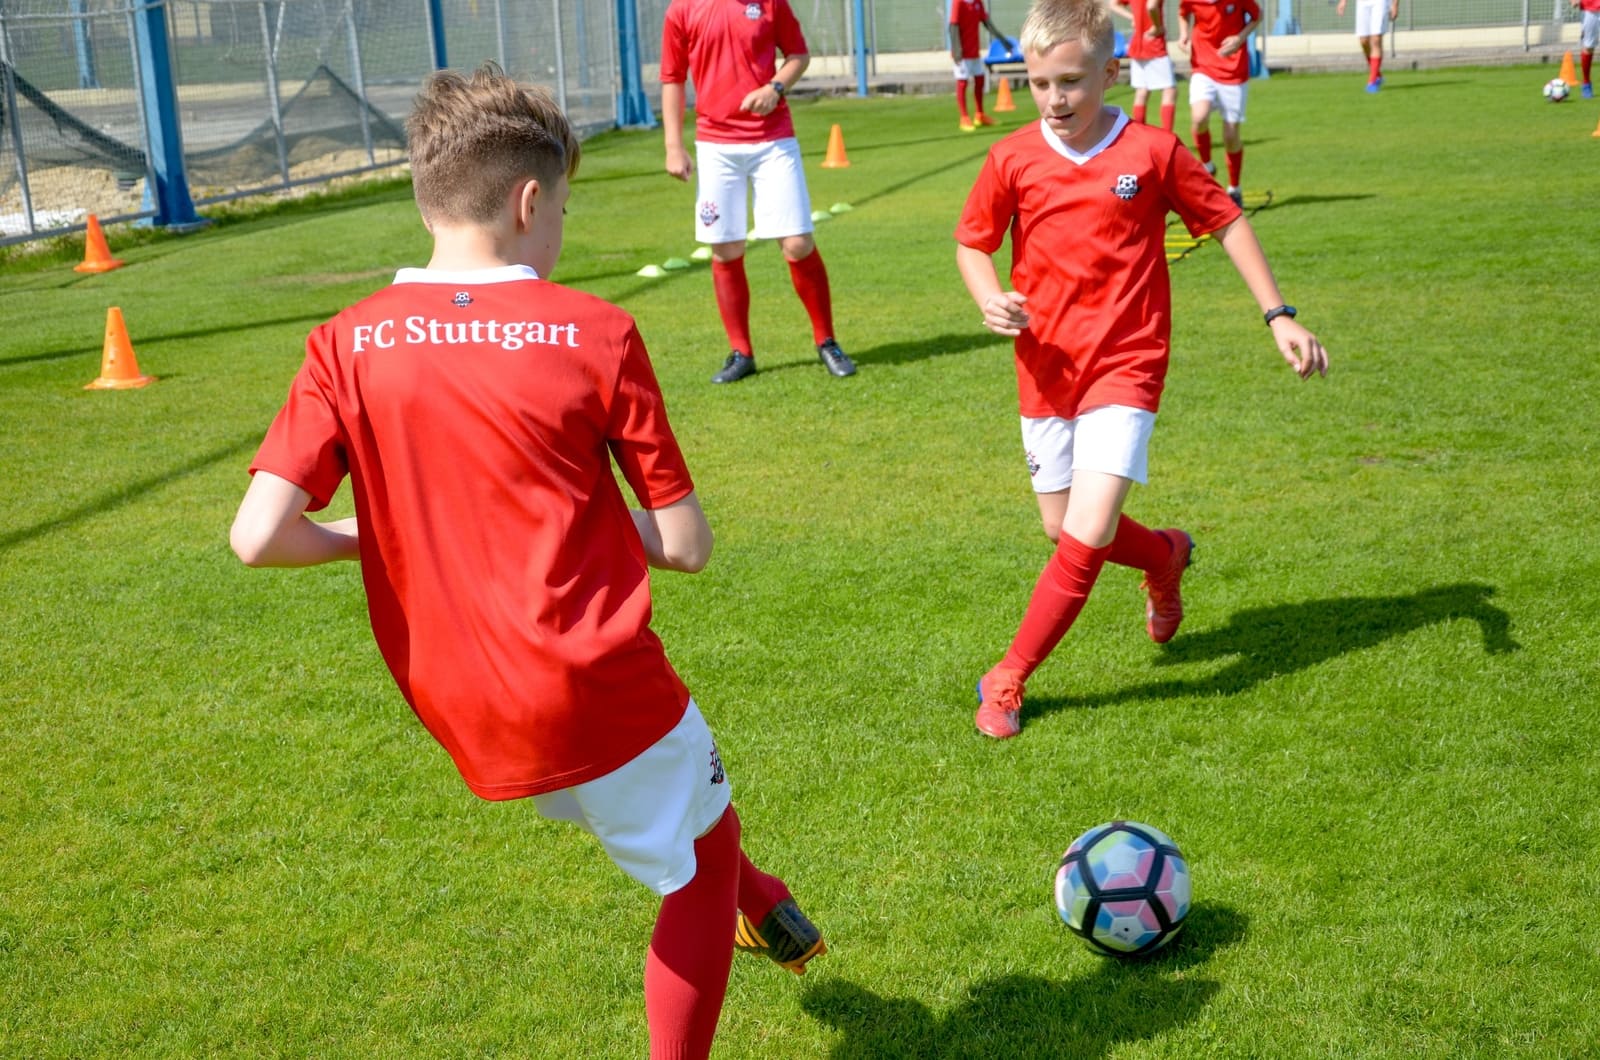 «FC Stuttgart - Кратово» – футбольный лагерь в Подмосковье, фото программы 8